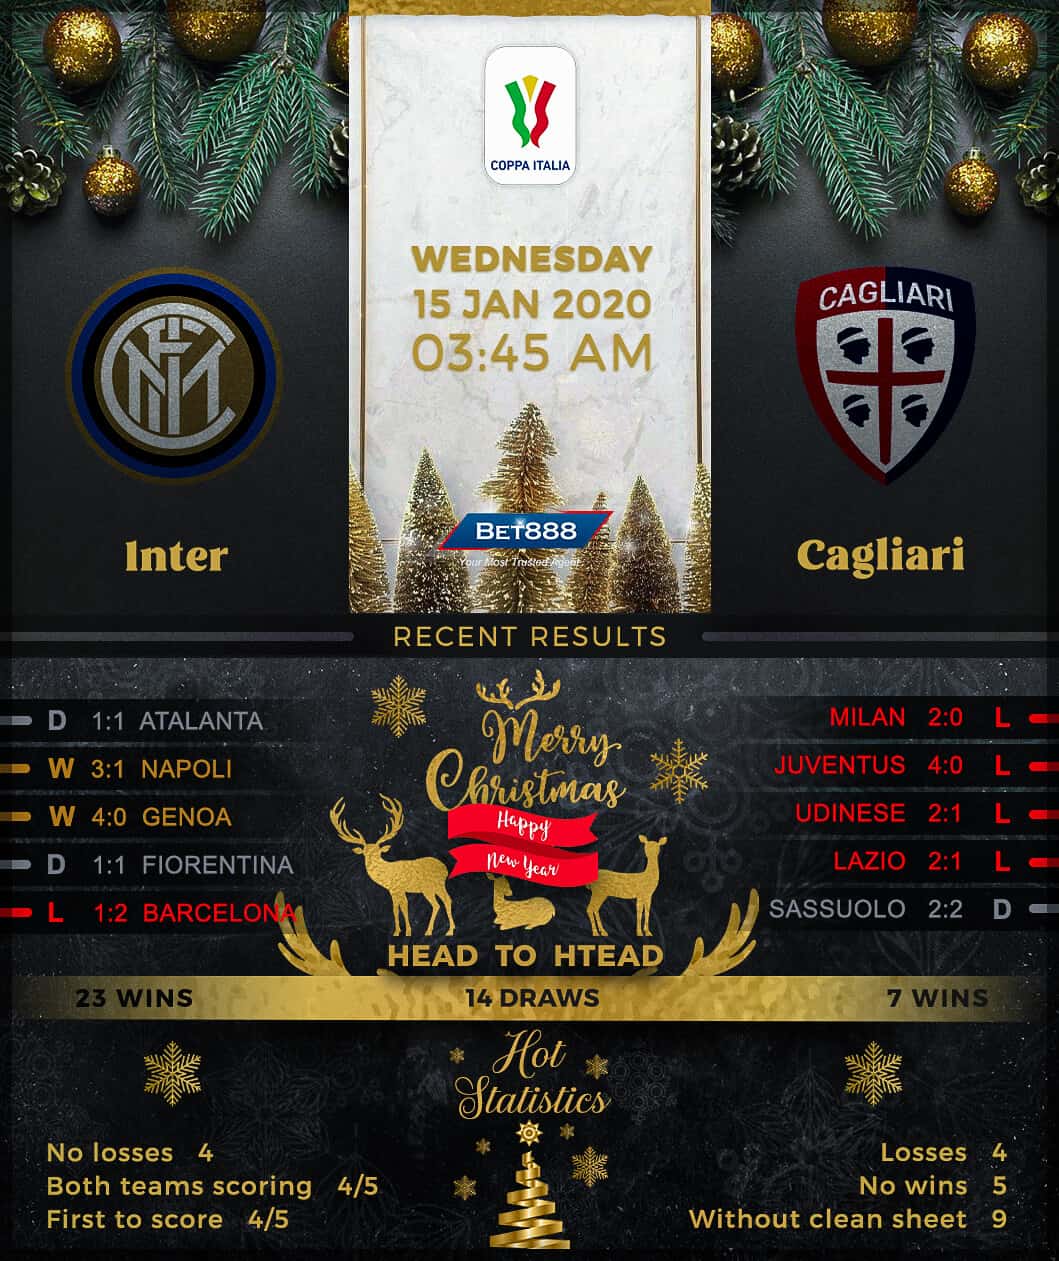 Internazionale vs Cagliari﻿ 15/01/20